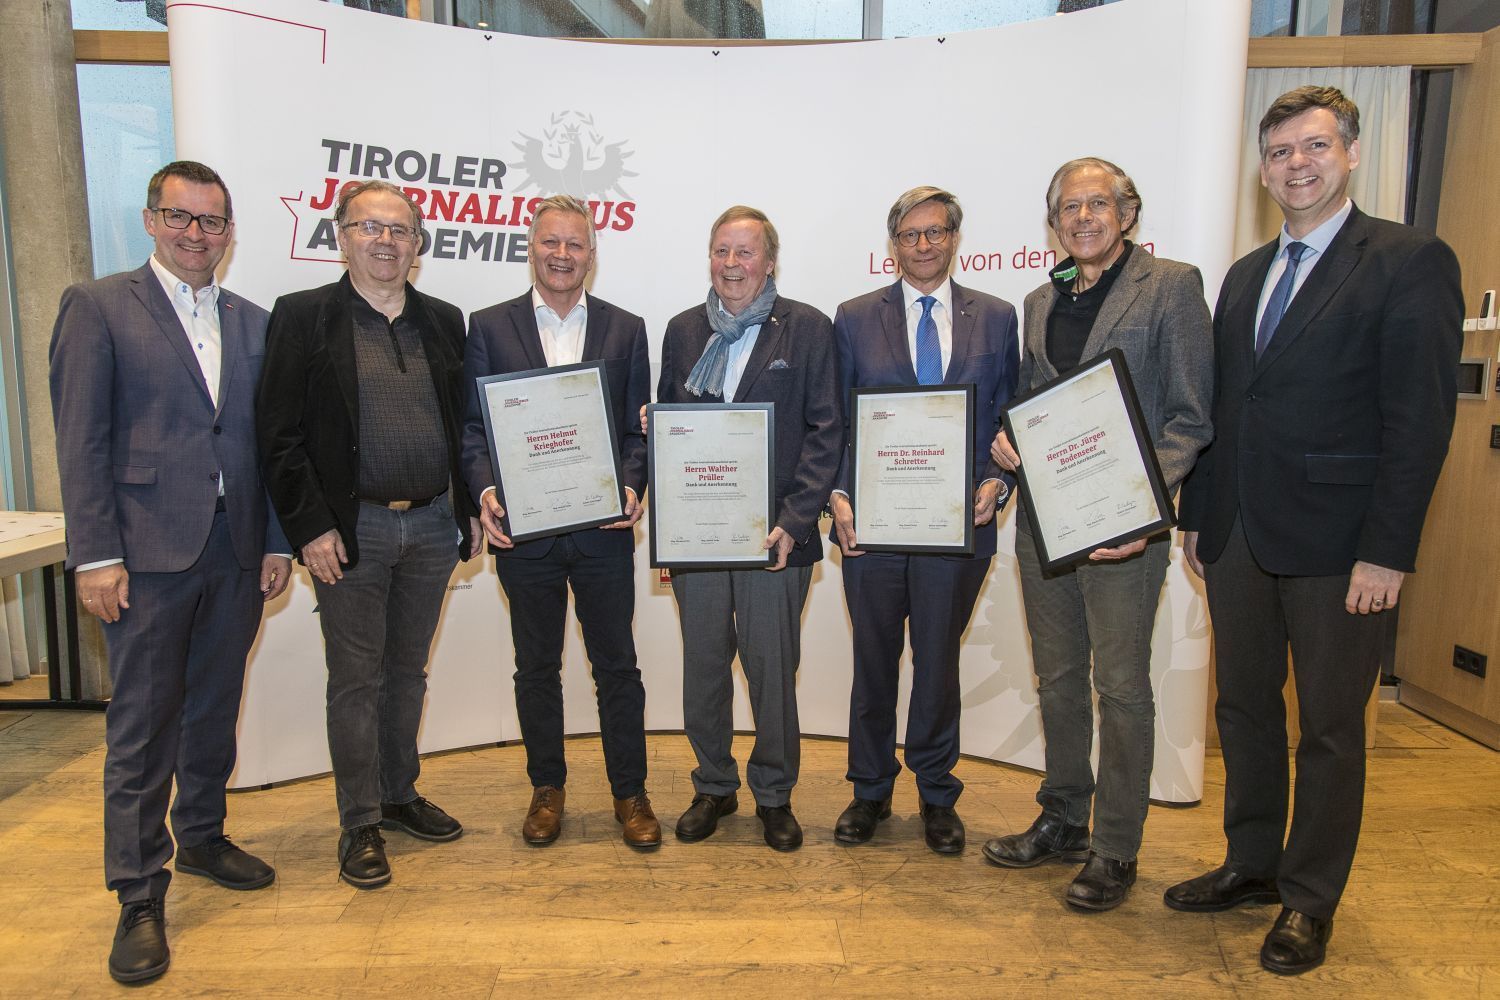 Tiroler Journalismusakademie ehrte verdiente Vorstandsmitglieder